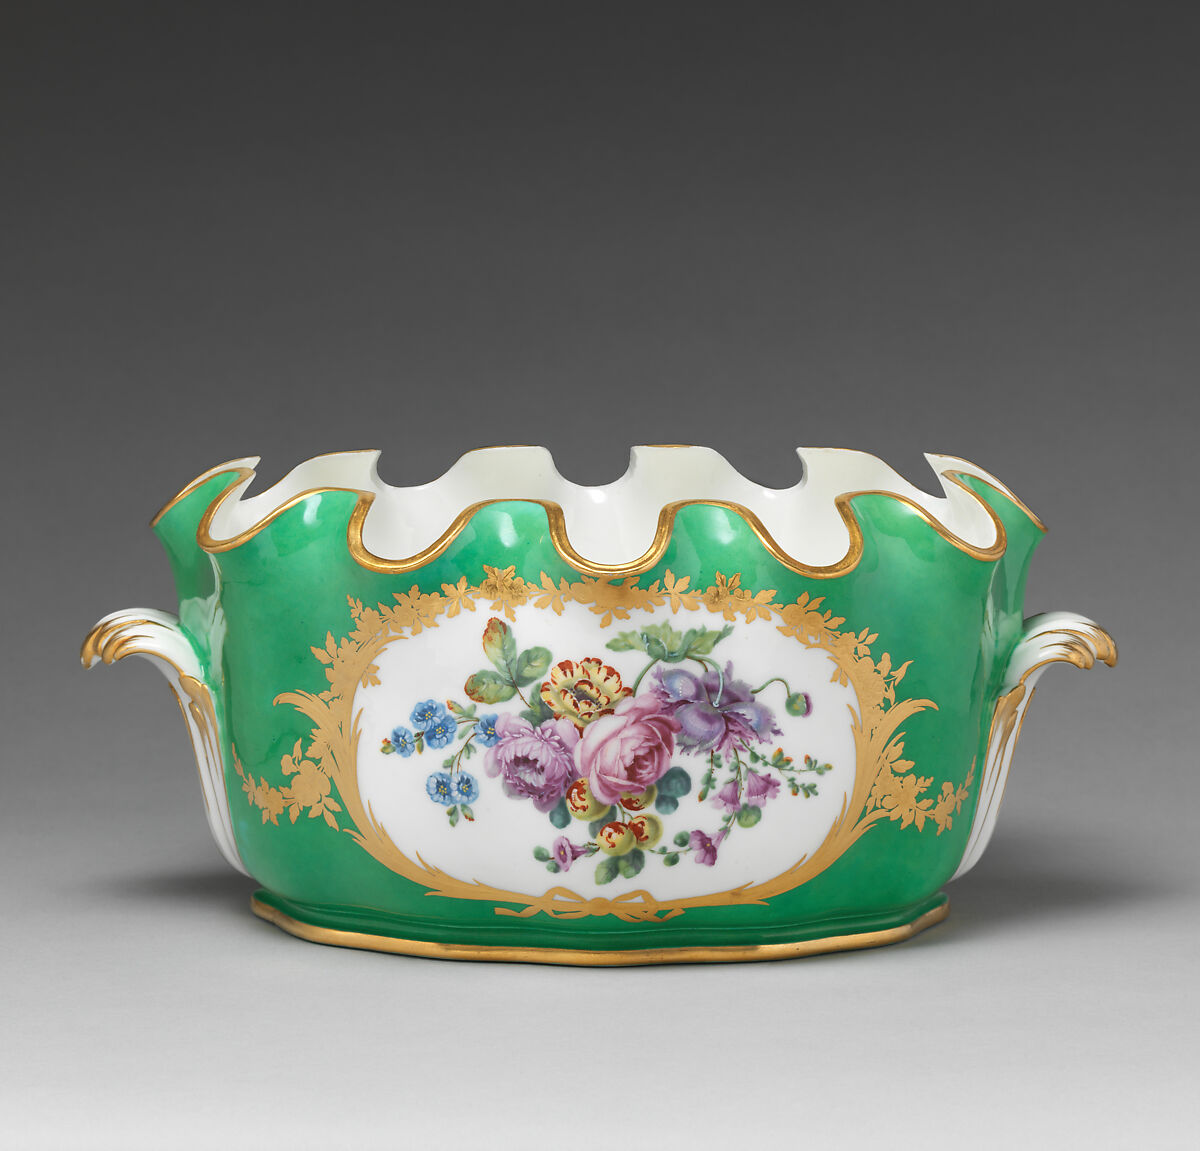 Monteith (Seau crennelé) (part of a service), Sèvres Manufactory (French, 1740–present), Soft-paste porcelain, French, Sèvres 